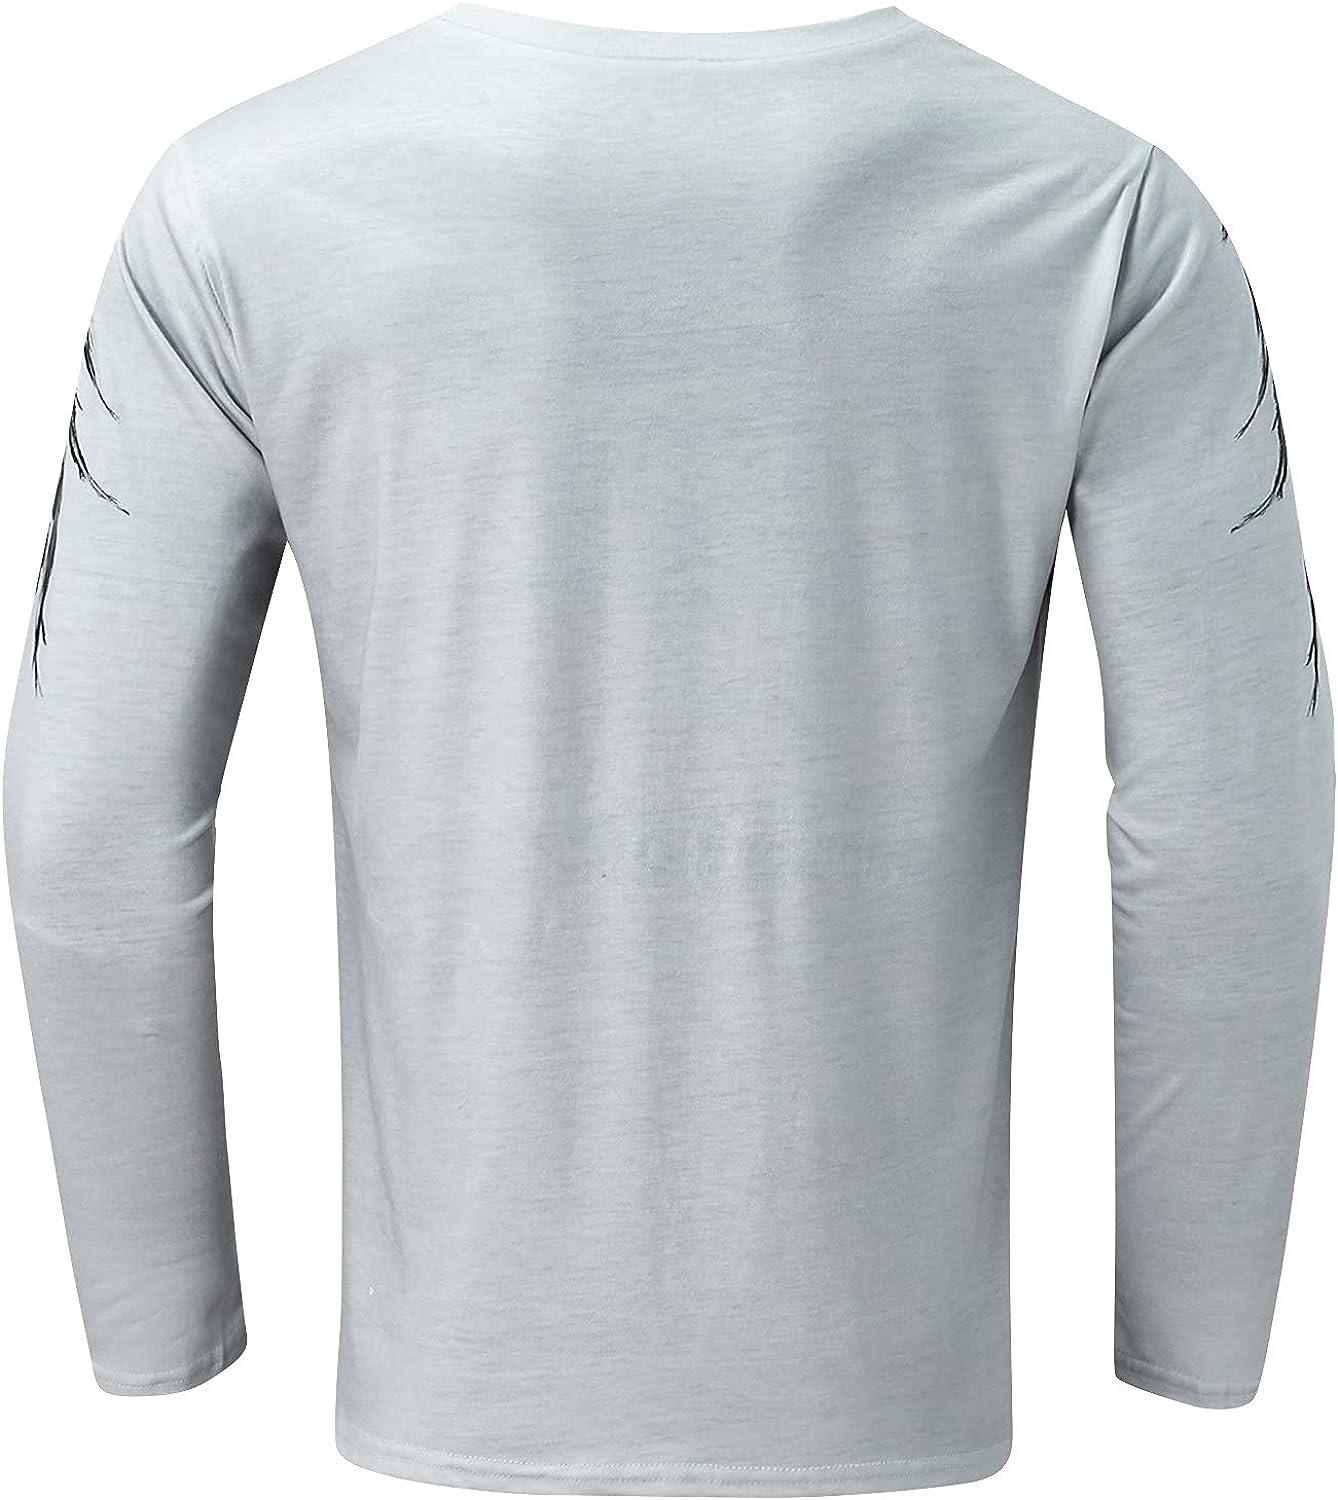 Buy Men's Printed Long Sleeves Raglan T-Shirt & Get 20% Off